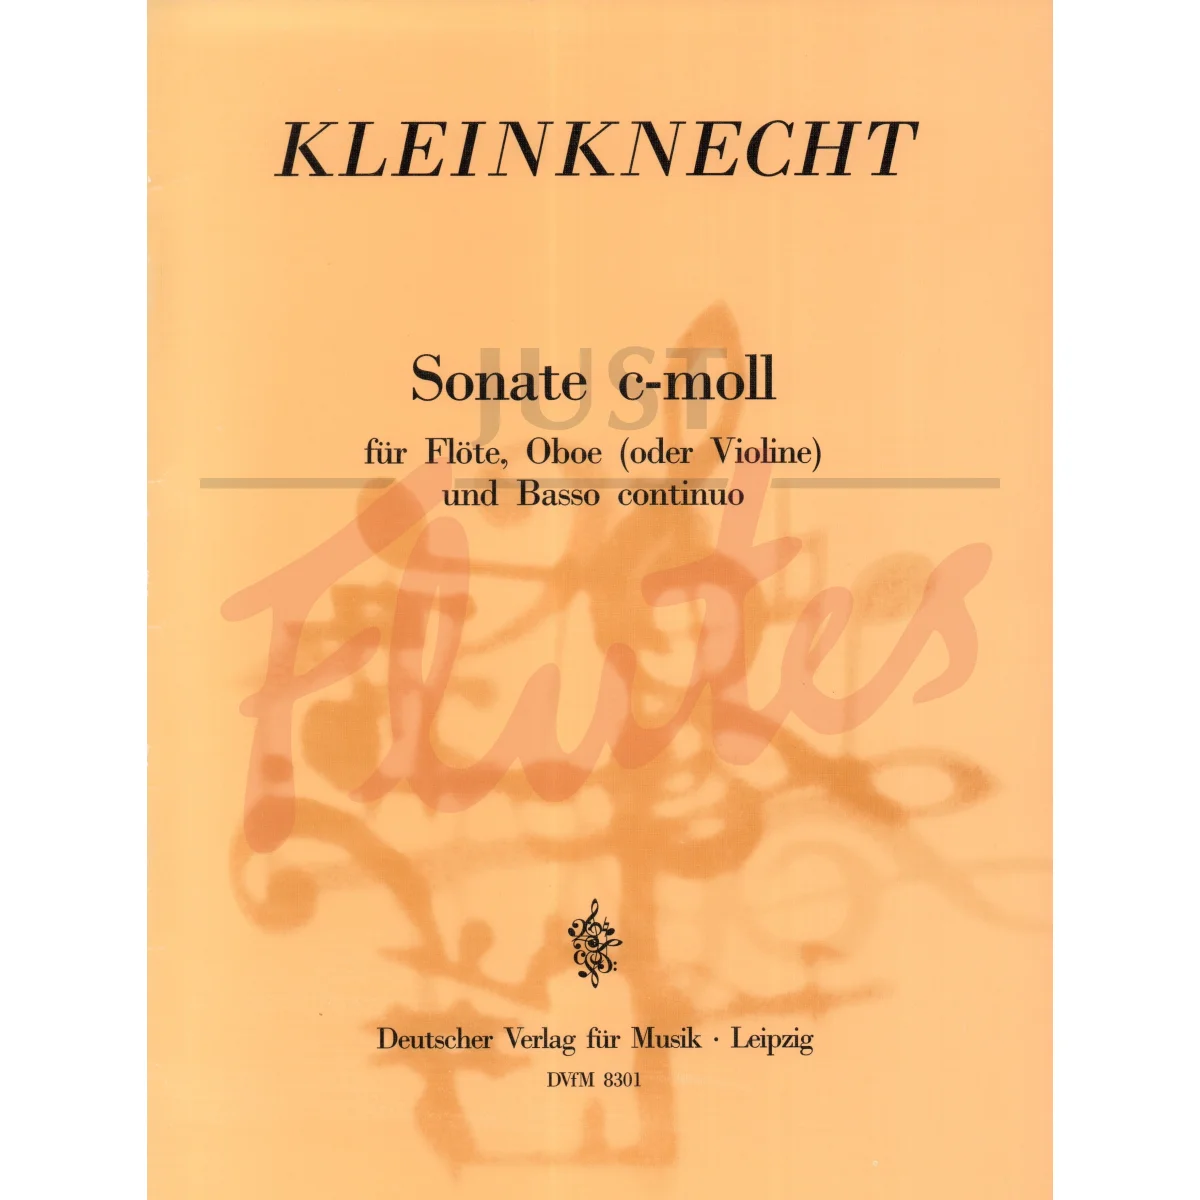 Sonata in C minor for Flute, Oboe/Violin and Basso Continuo